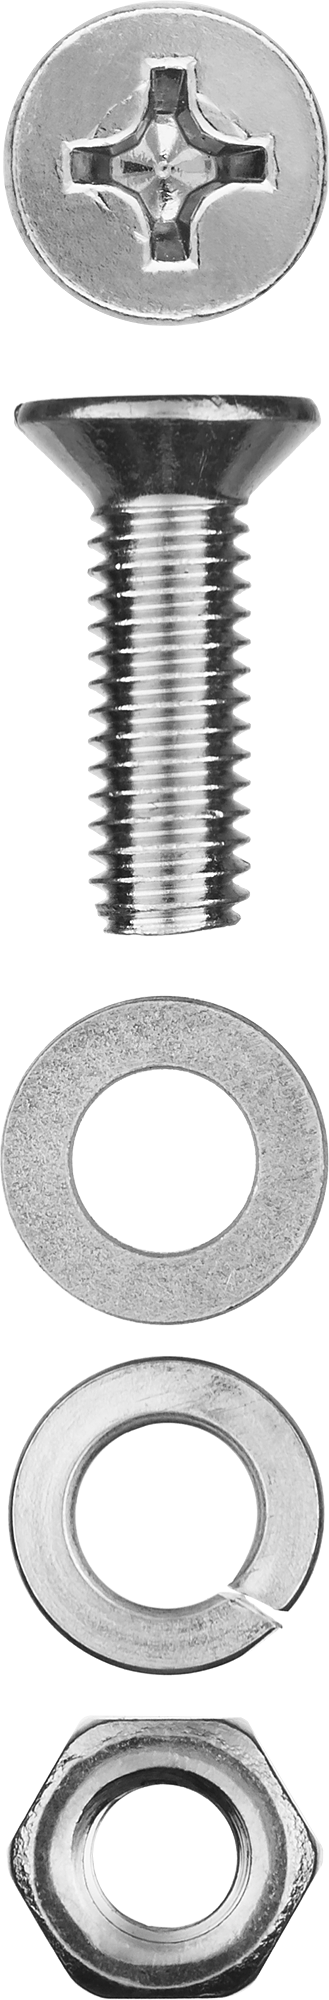 Винт (DIN965) с потайной головкой в комплекте с гайкой (DIN934), шайбой (DIN125), шайбой пруж. (DIN127) Зубр 303456-05-020, М5, 2 см, 965 DIN, 5 мм, оцинкованная сталь, 16 шт., фасовка (303456-05-020)